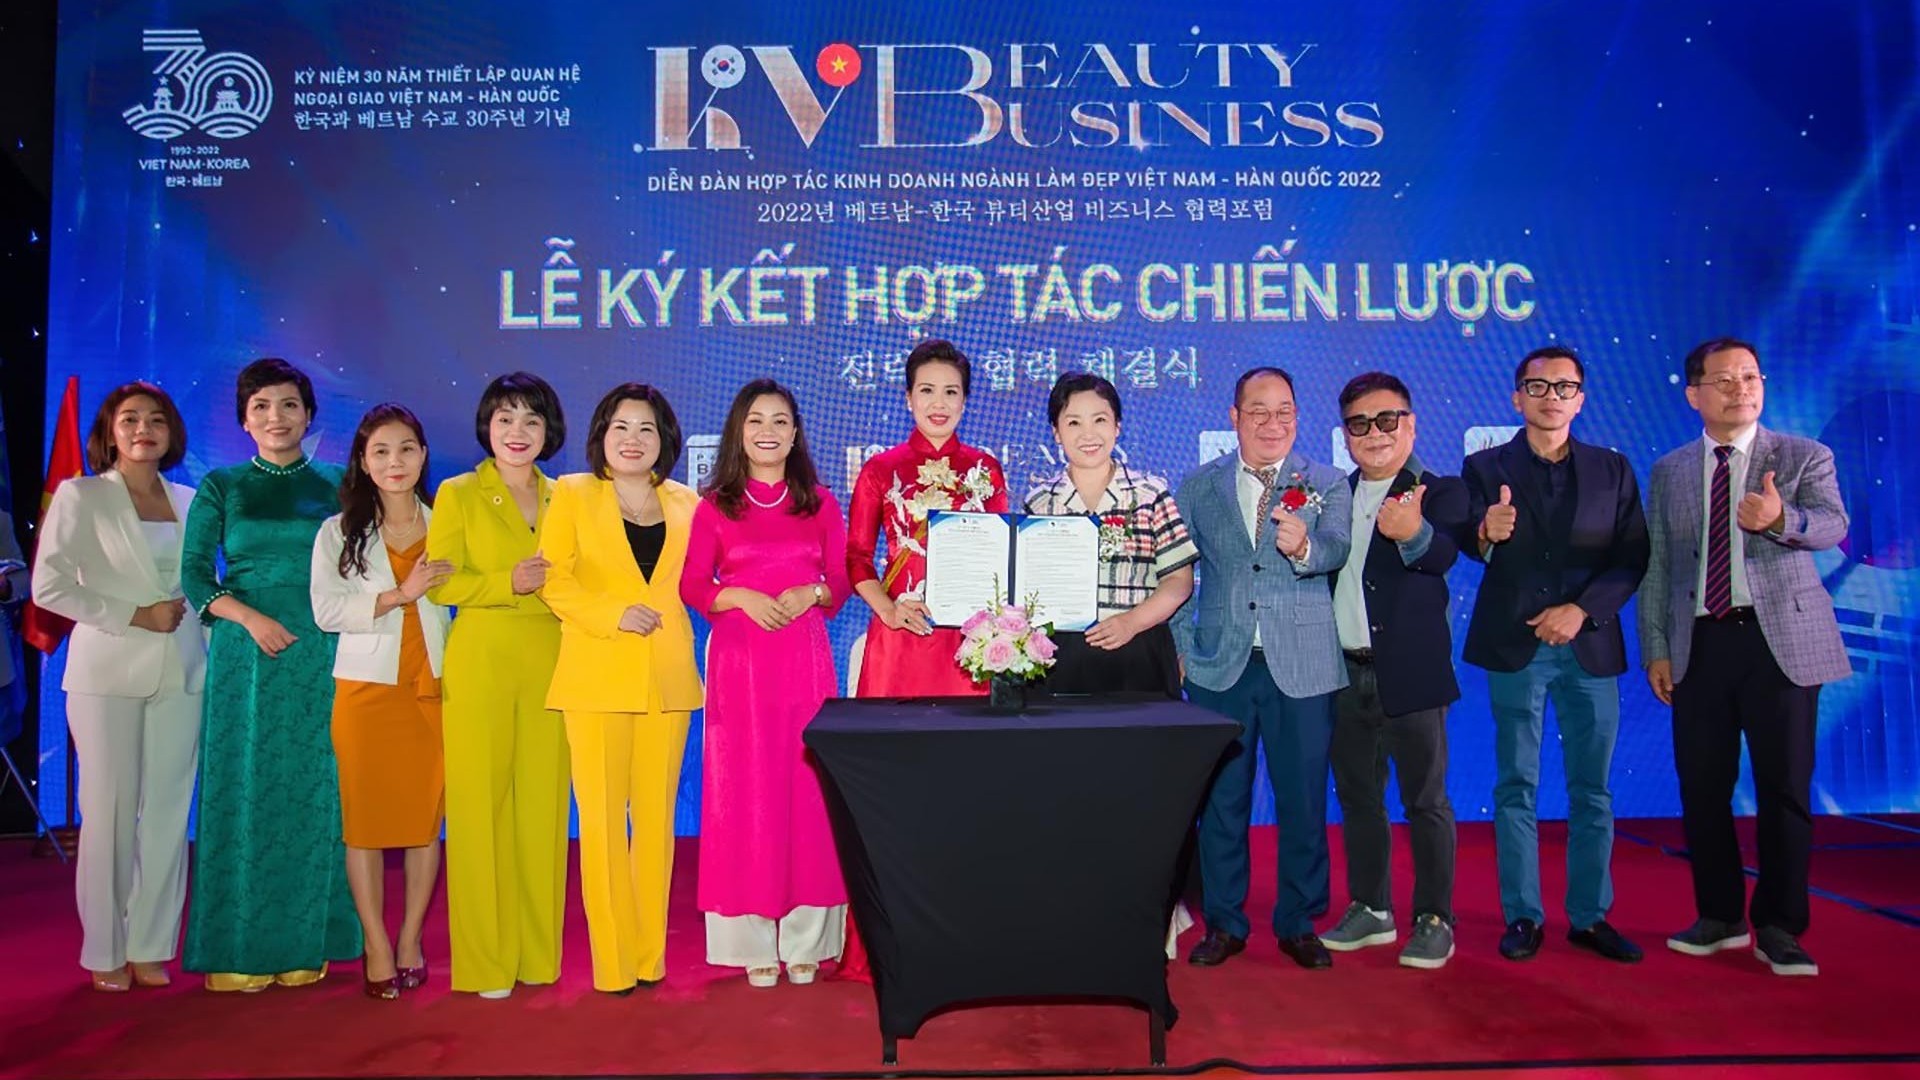 KV Beauty Business 2022: Sức sống mới cho ngành làm đẹp Việt Nam - Hàn Quốc